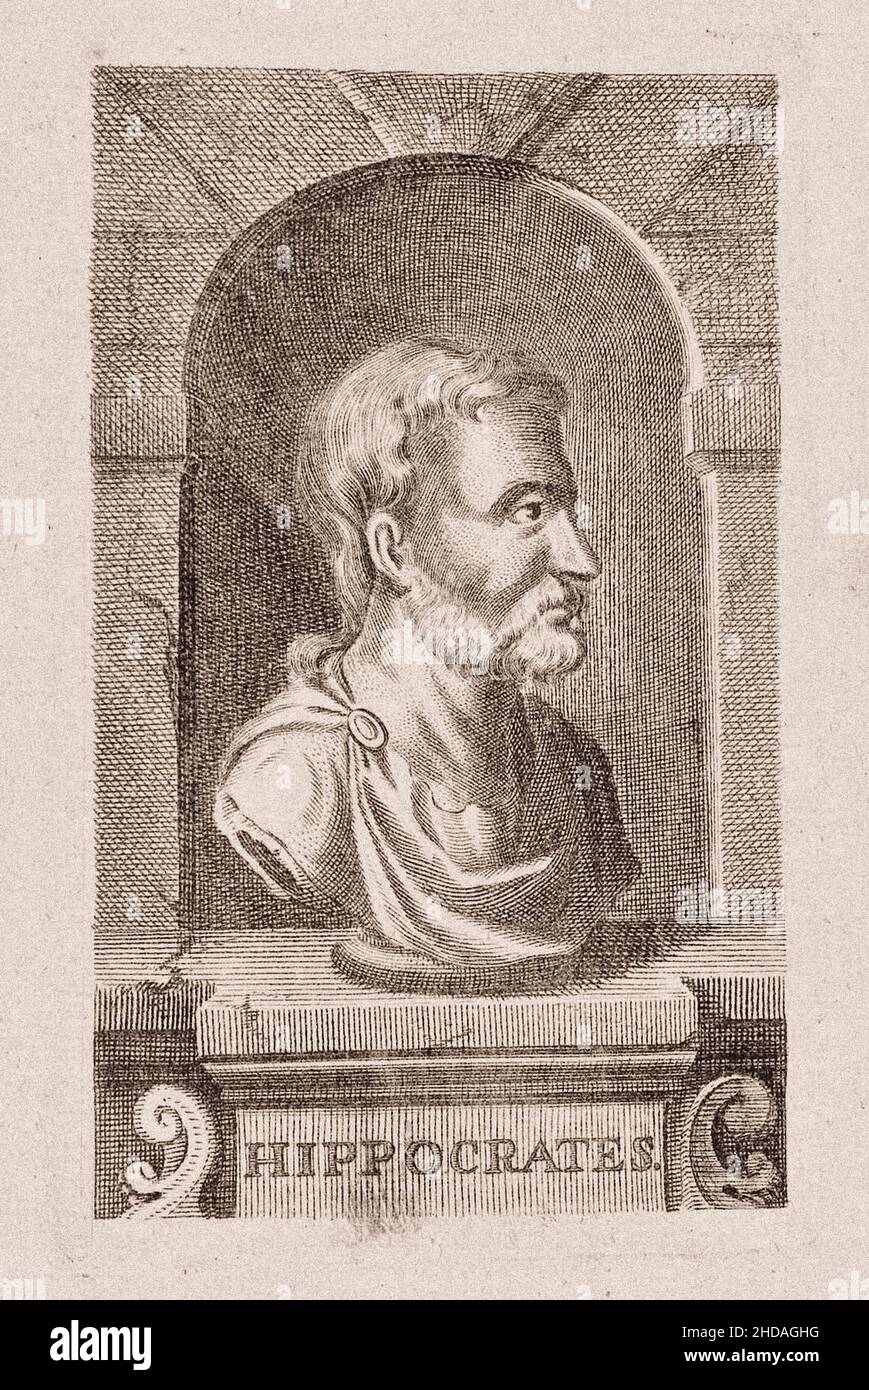 El grabado del siglo 17th de Hipócrates de Kos. Hipócrates de Kos (c. 460 – c. 370 aC), también conocido como Hipócrates II, era un médico griego de la Foto de stock